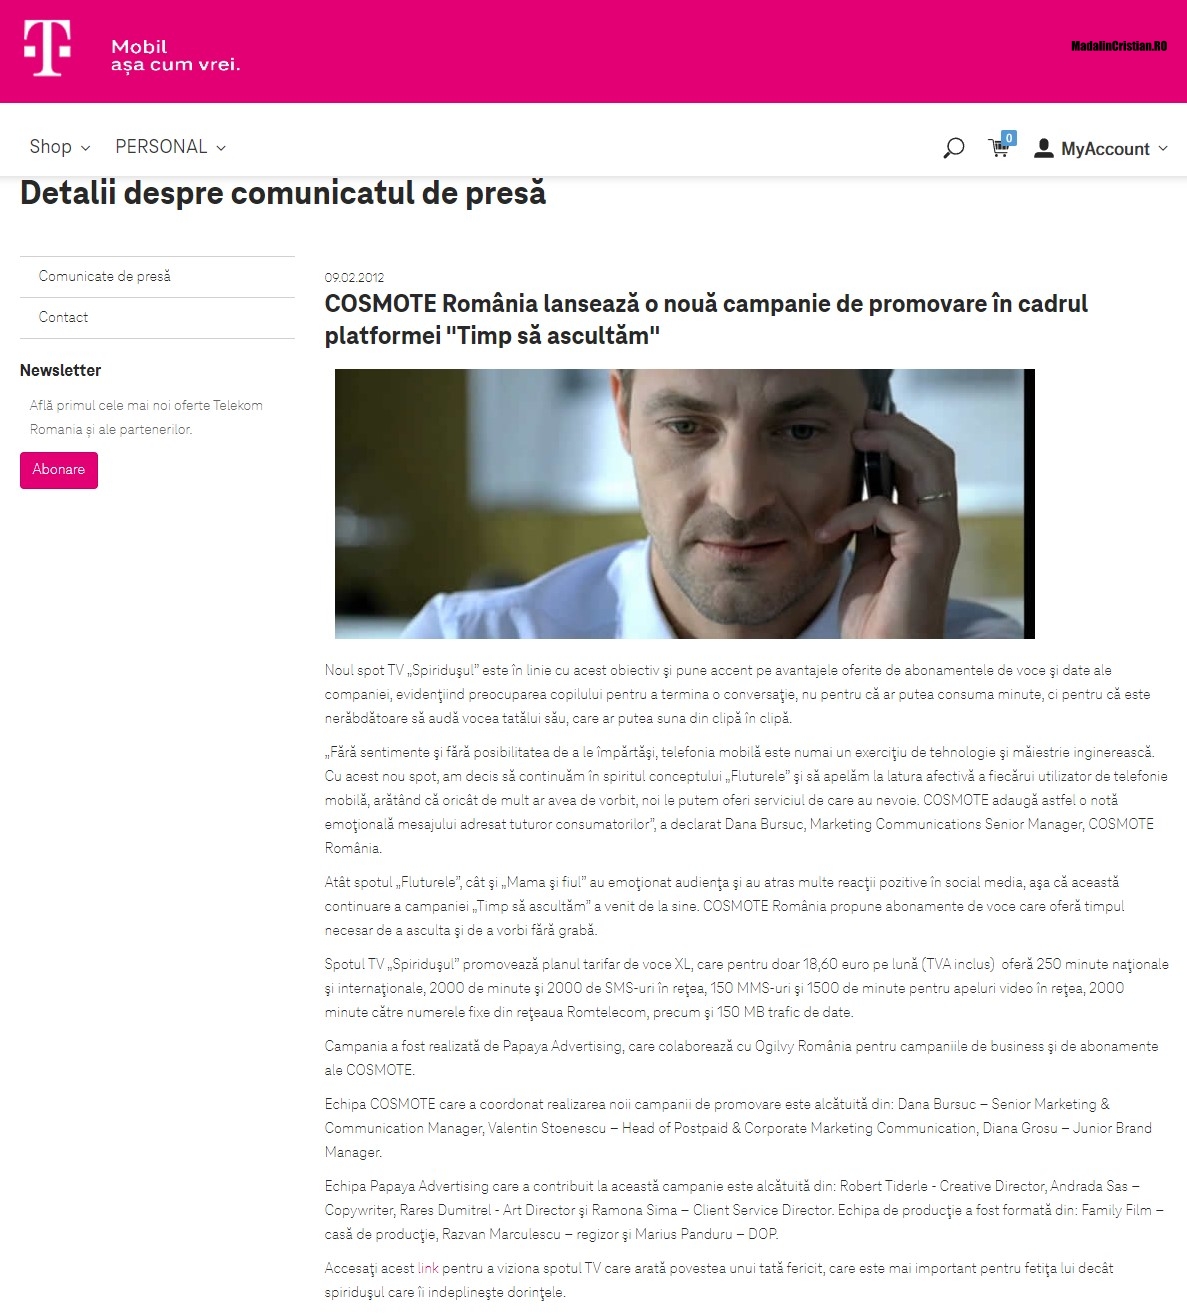 Comunicat COSMOTE 09.02.2012